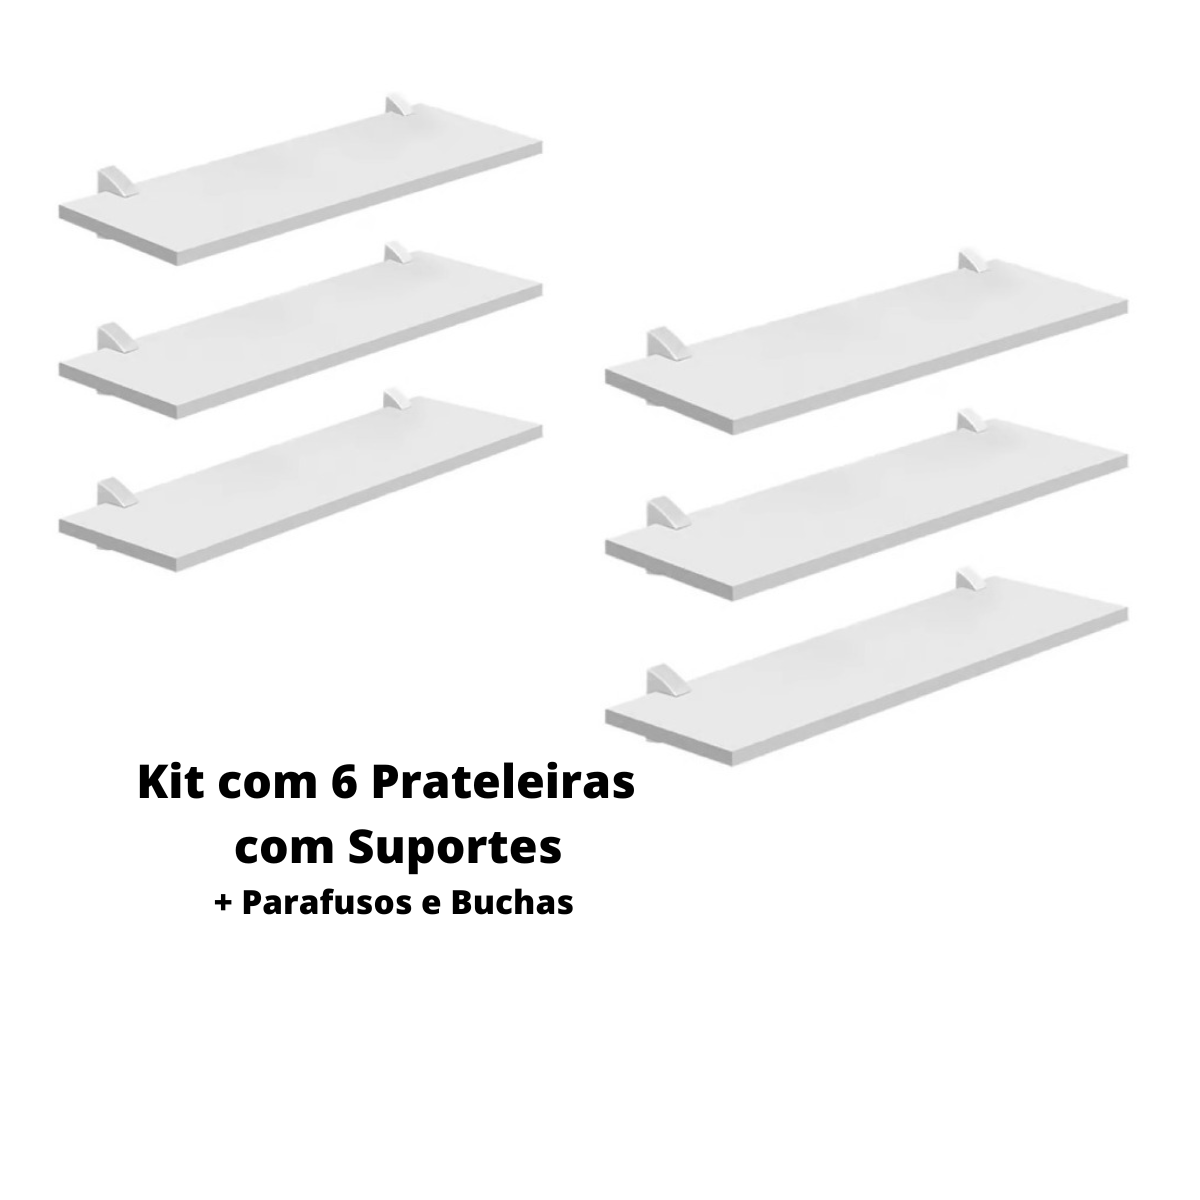 Kit com 6 Prateleiras Mdp Bcas 20x28 com Suportes D-core